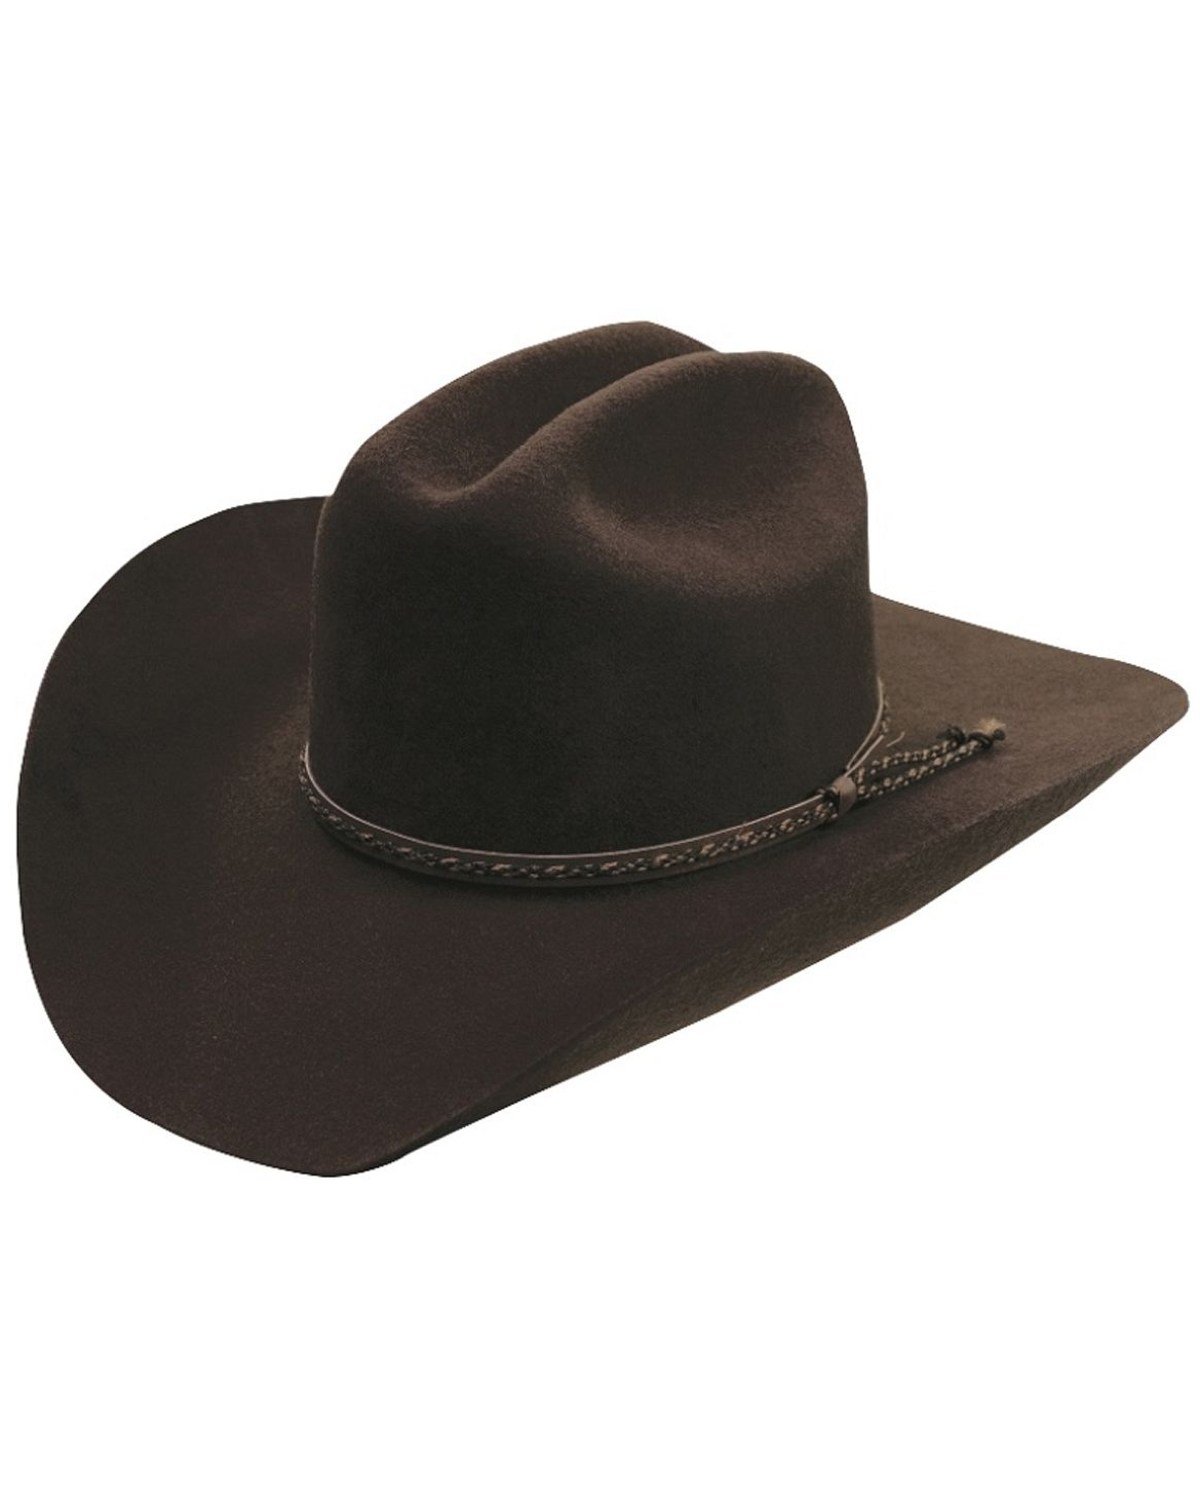 Silverado Men's Hazer Felt Cowboy Hat